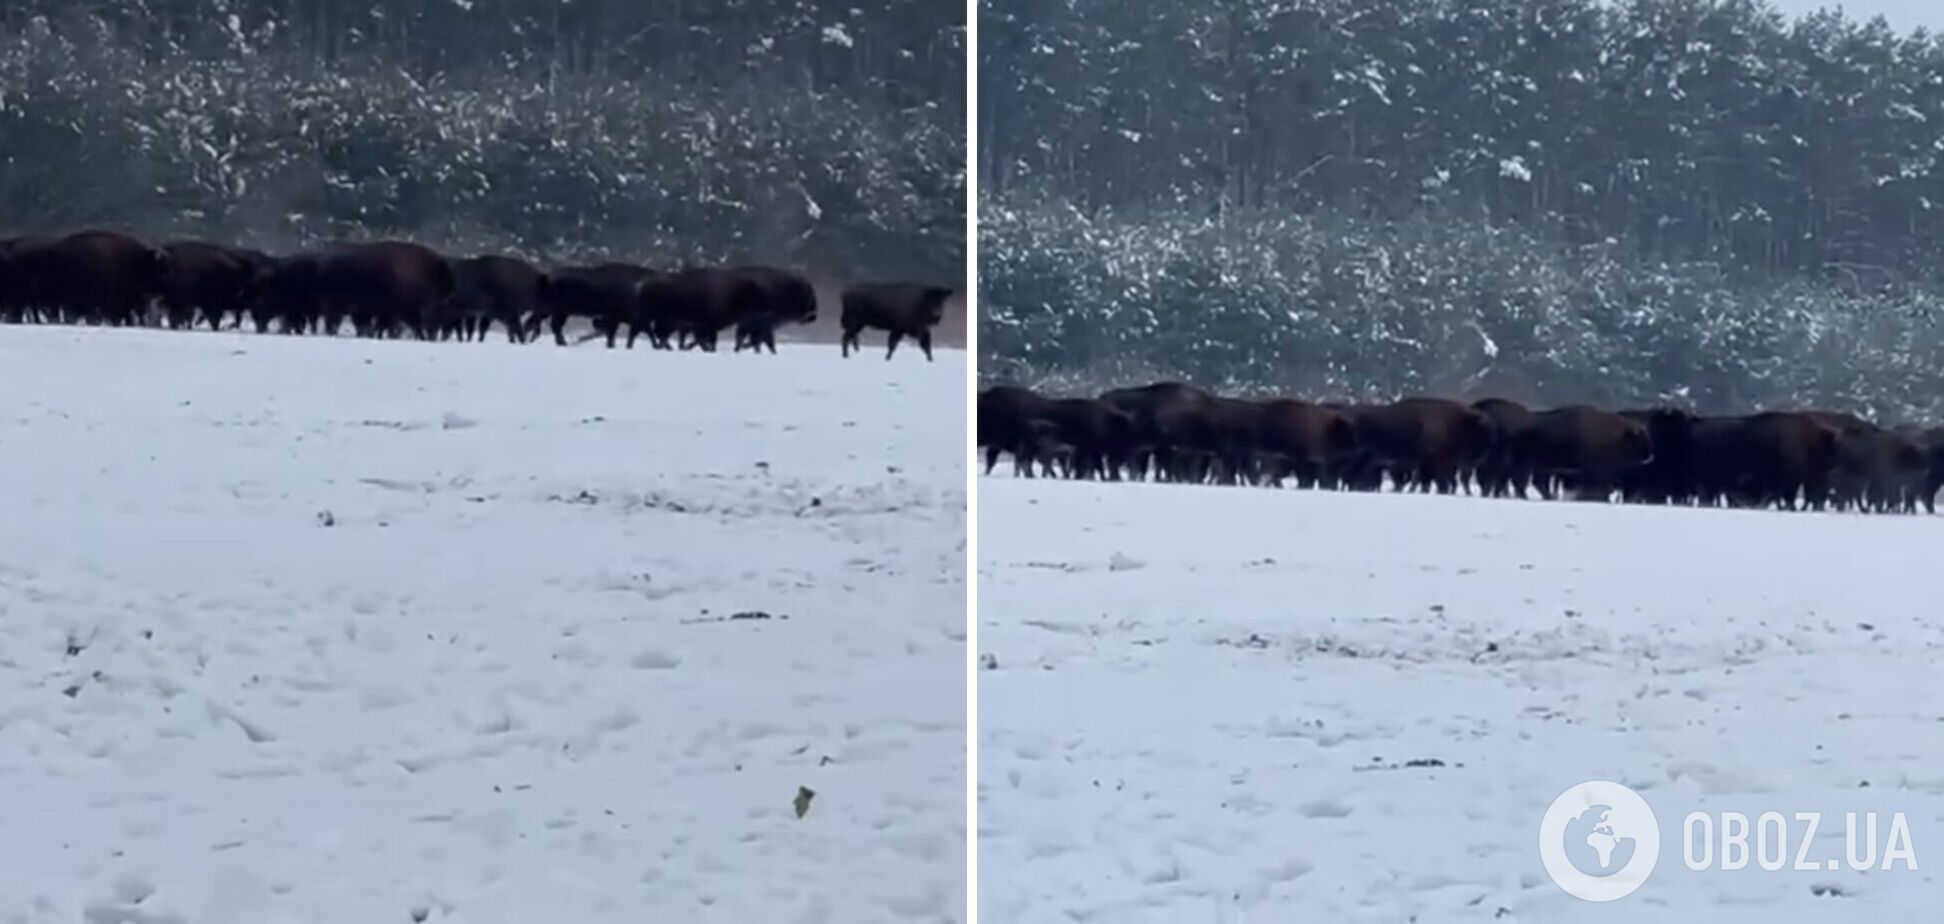 Во Львовской области зафиксировали наибольшую популяцию бизонов в Украине: появилось видео